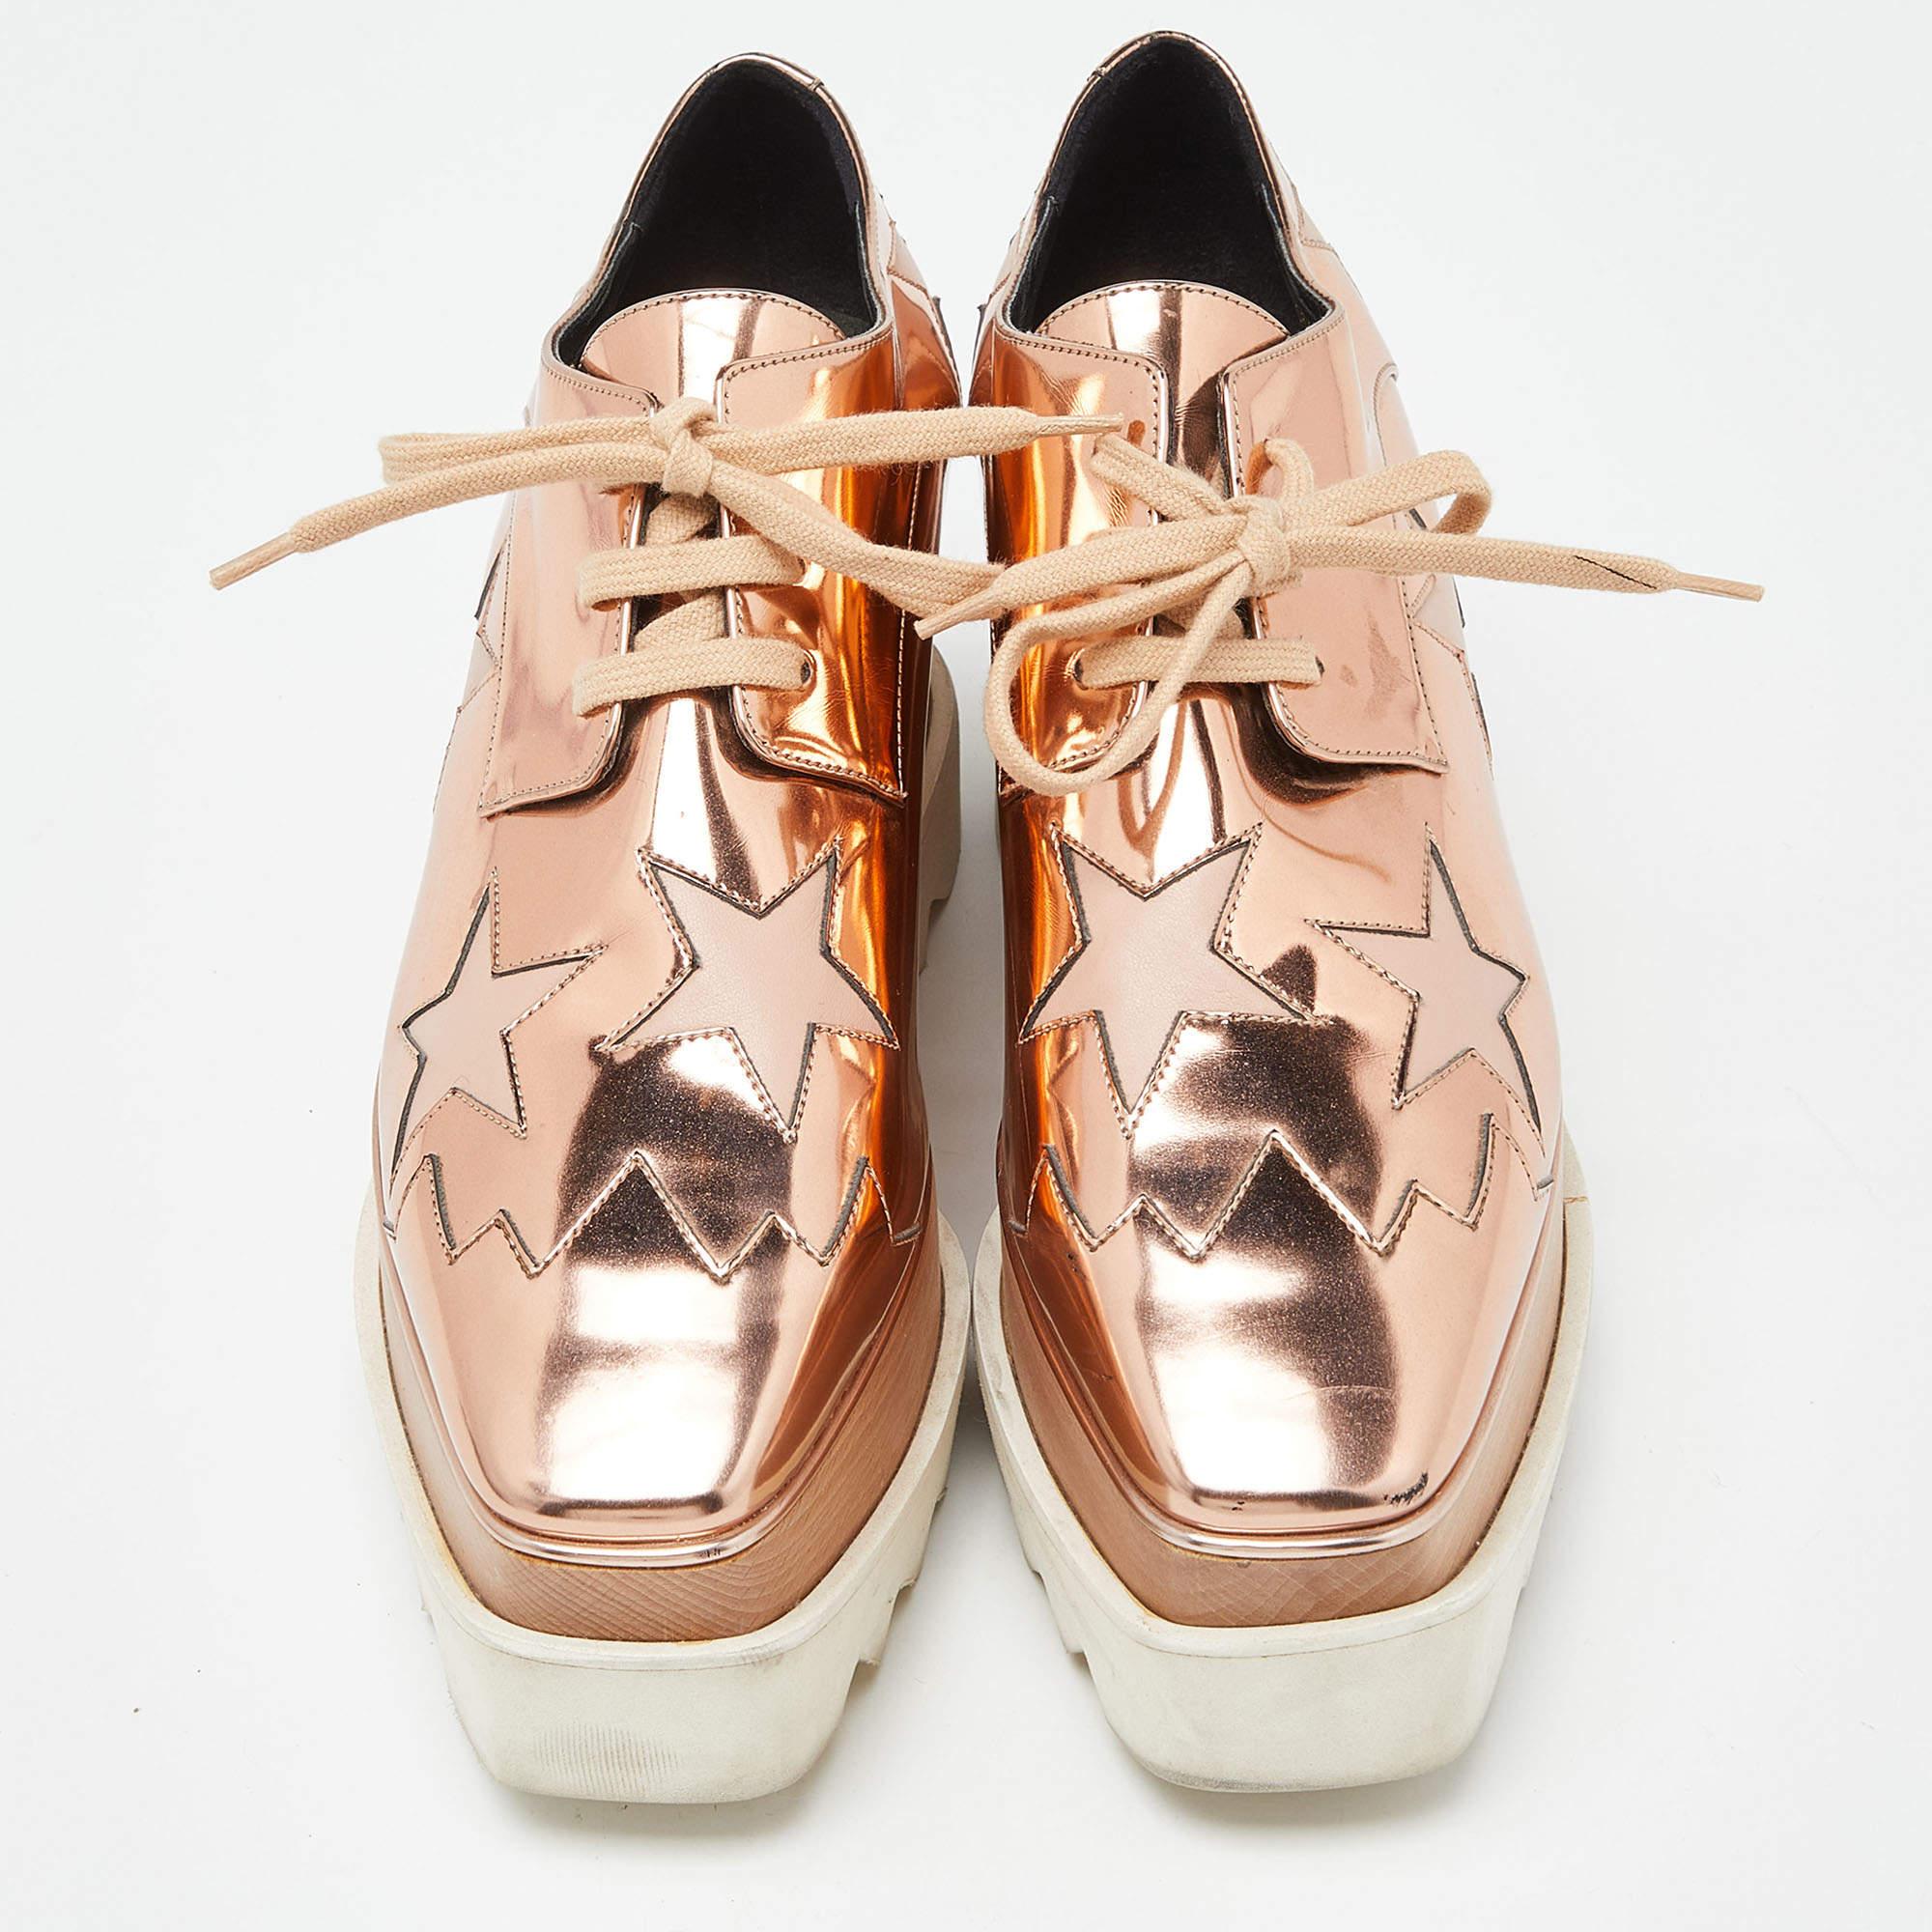 Stella McCartney strahlt mit diesen Elyse-Schuhen ihren hohen Stil und einzigartigen Modegeschmack aus. Sie strotzen nur so vor exquisiten Details wie den Schnürsenkeln an der Decksohle und den dicken Plateaus. Holen Sie sich dieses Paar noch heute